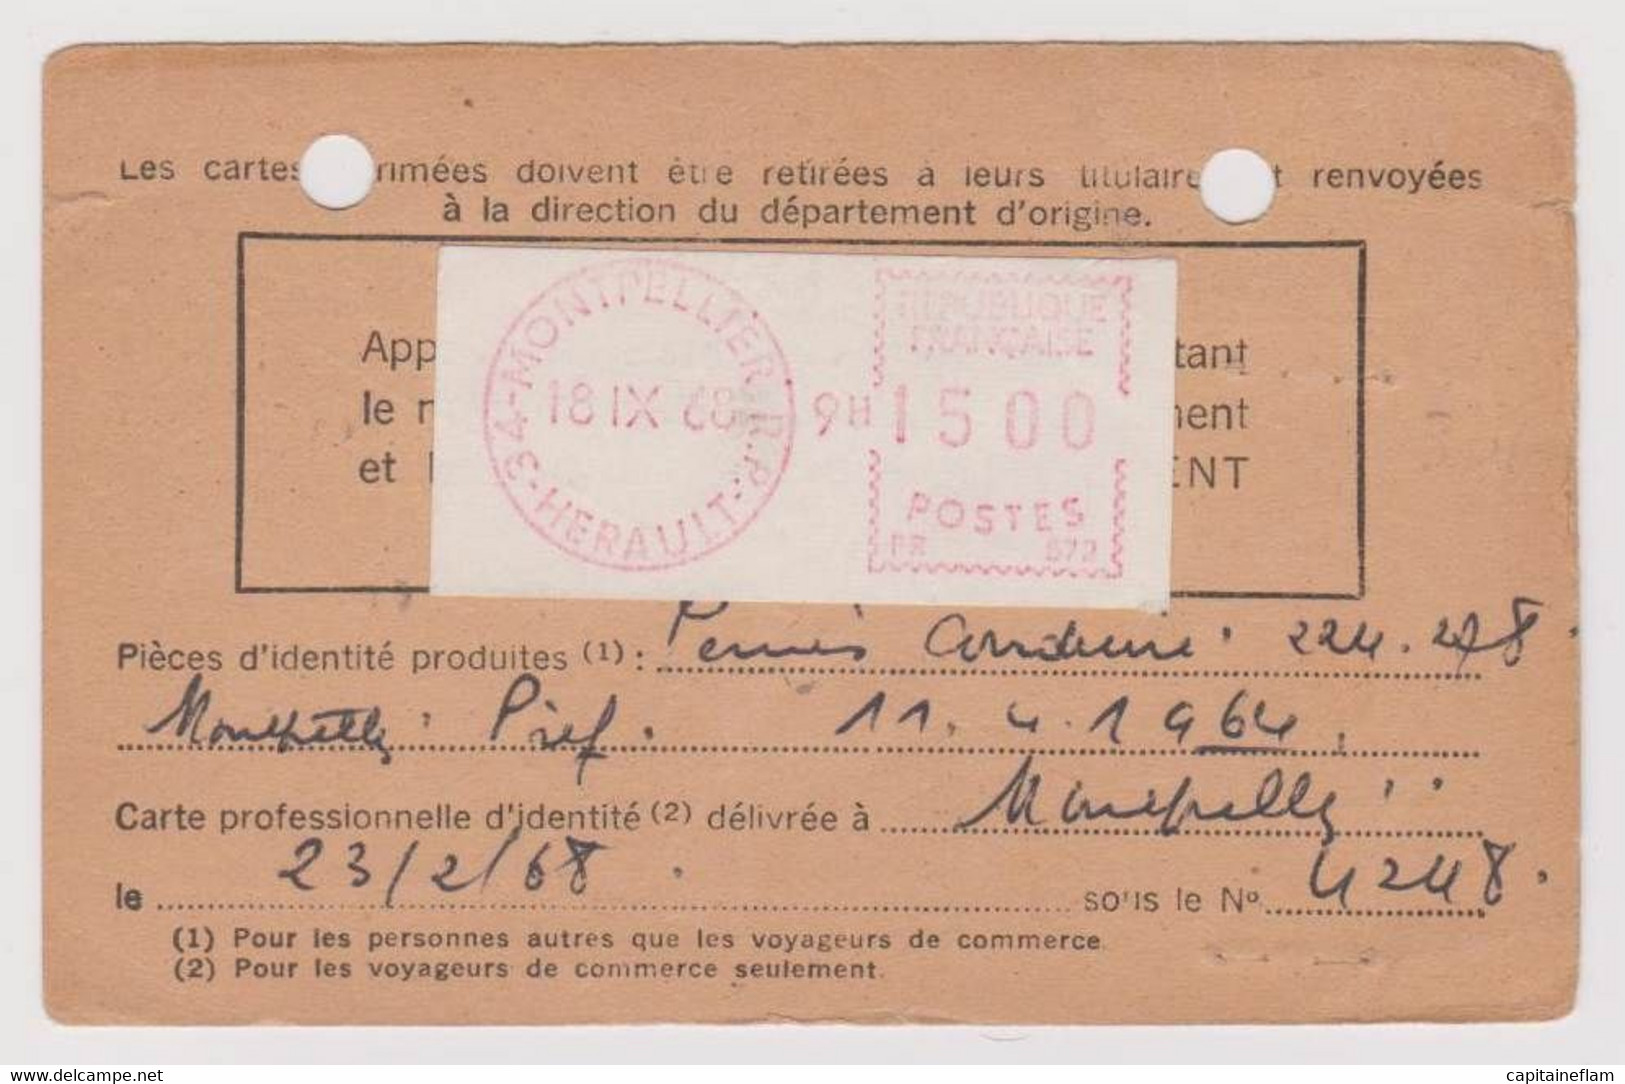 Carte D'abonnement à La Poste Restante Utilisée Référence J.A.920473 Tarif à 15 F 1968 Machine De Guichet Camp - Documents De La Poste